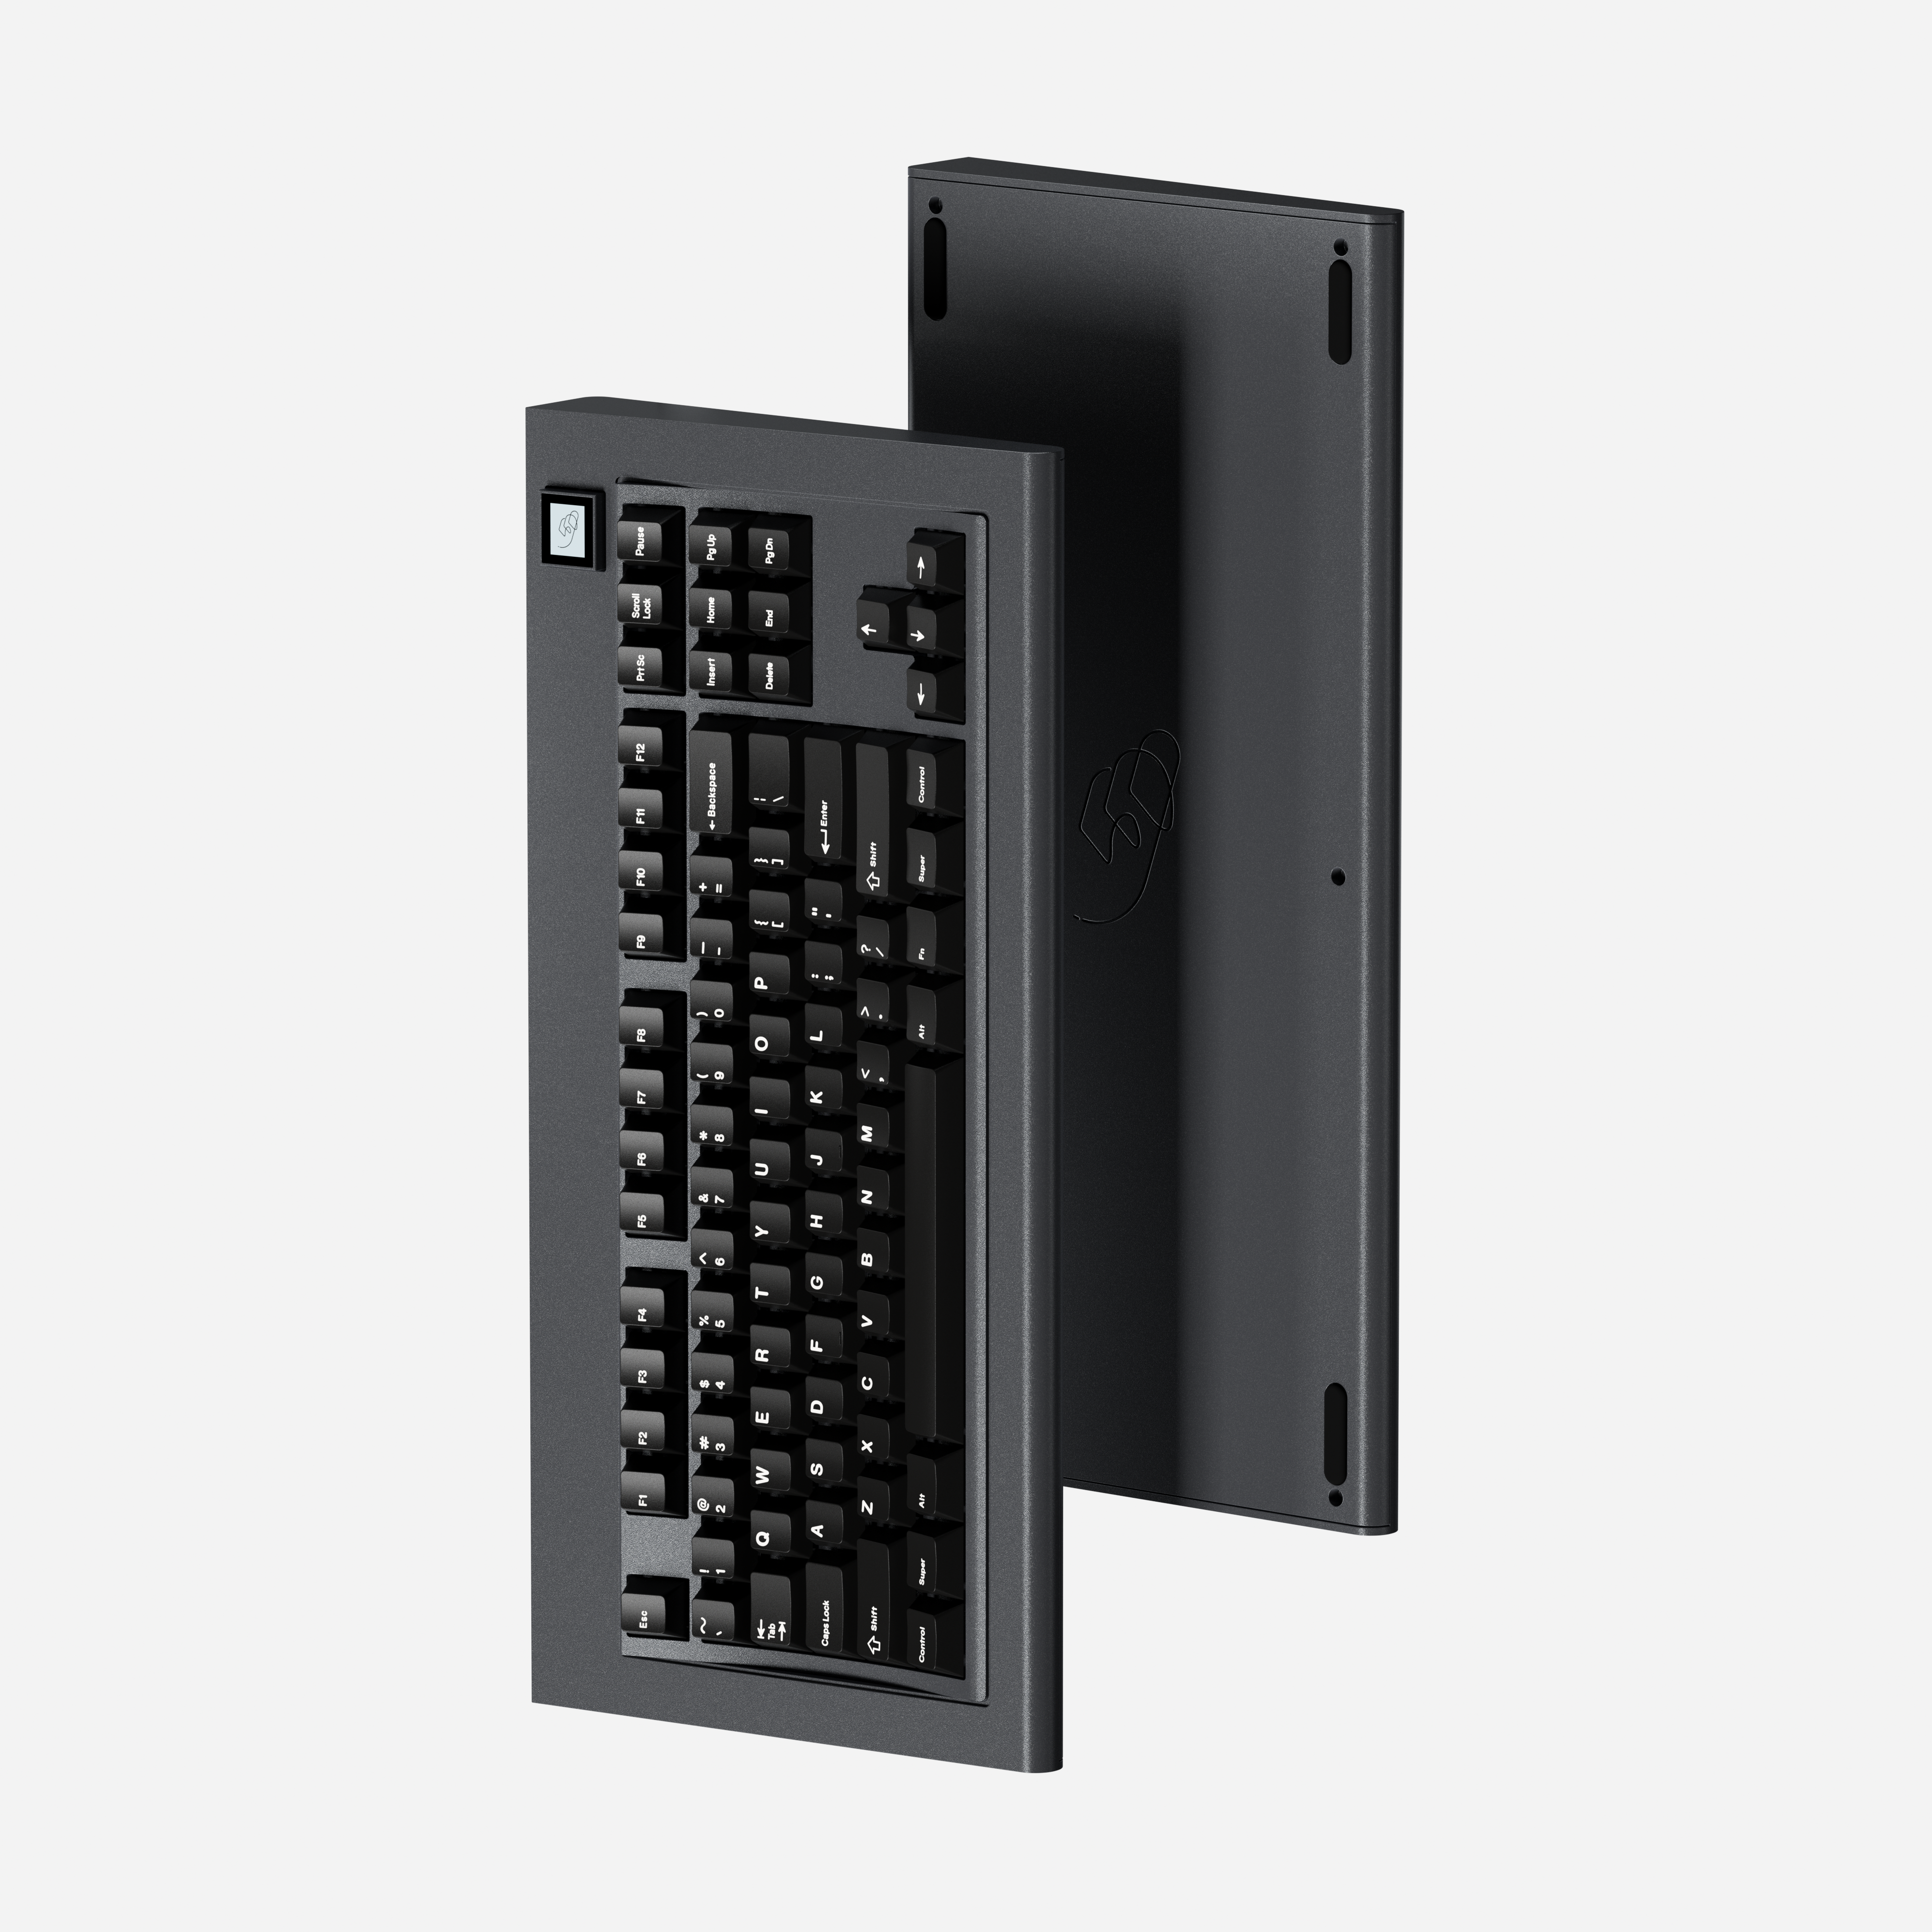 [Ended] Model OLED Keyboard Kit